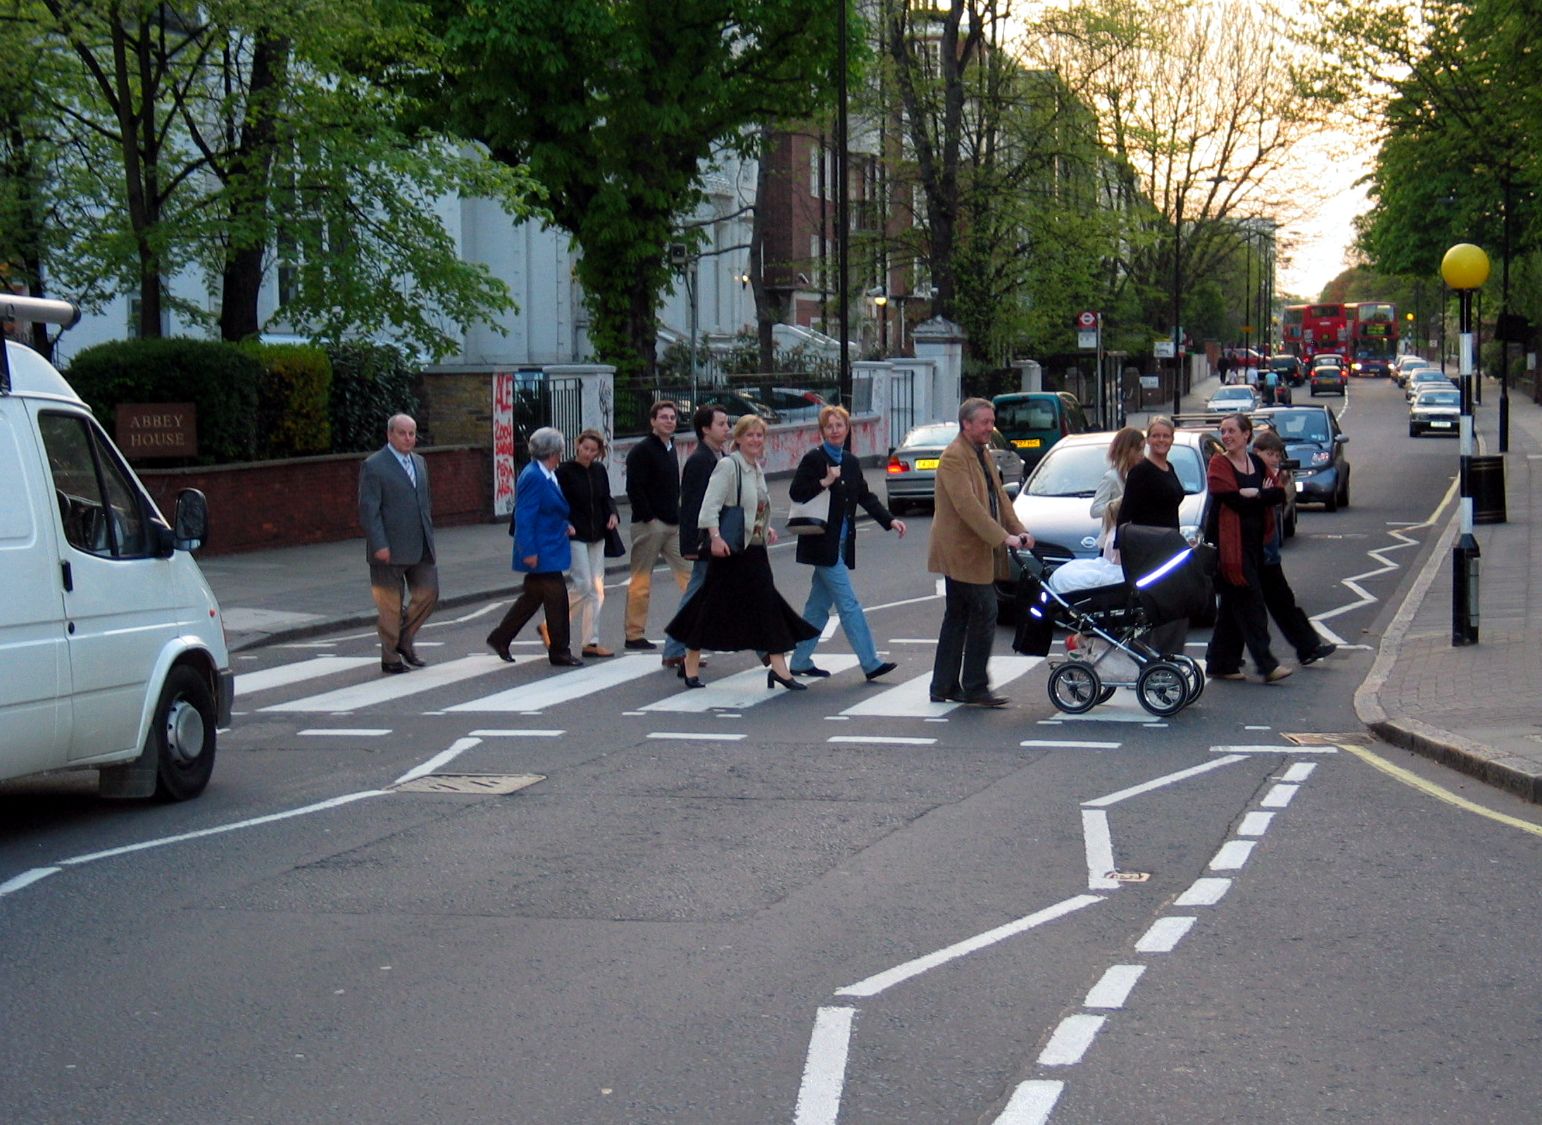 Mensen lopen over het zebrapad in Abbey Road, Londen